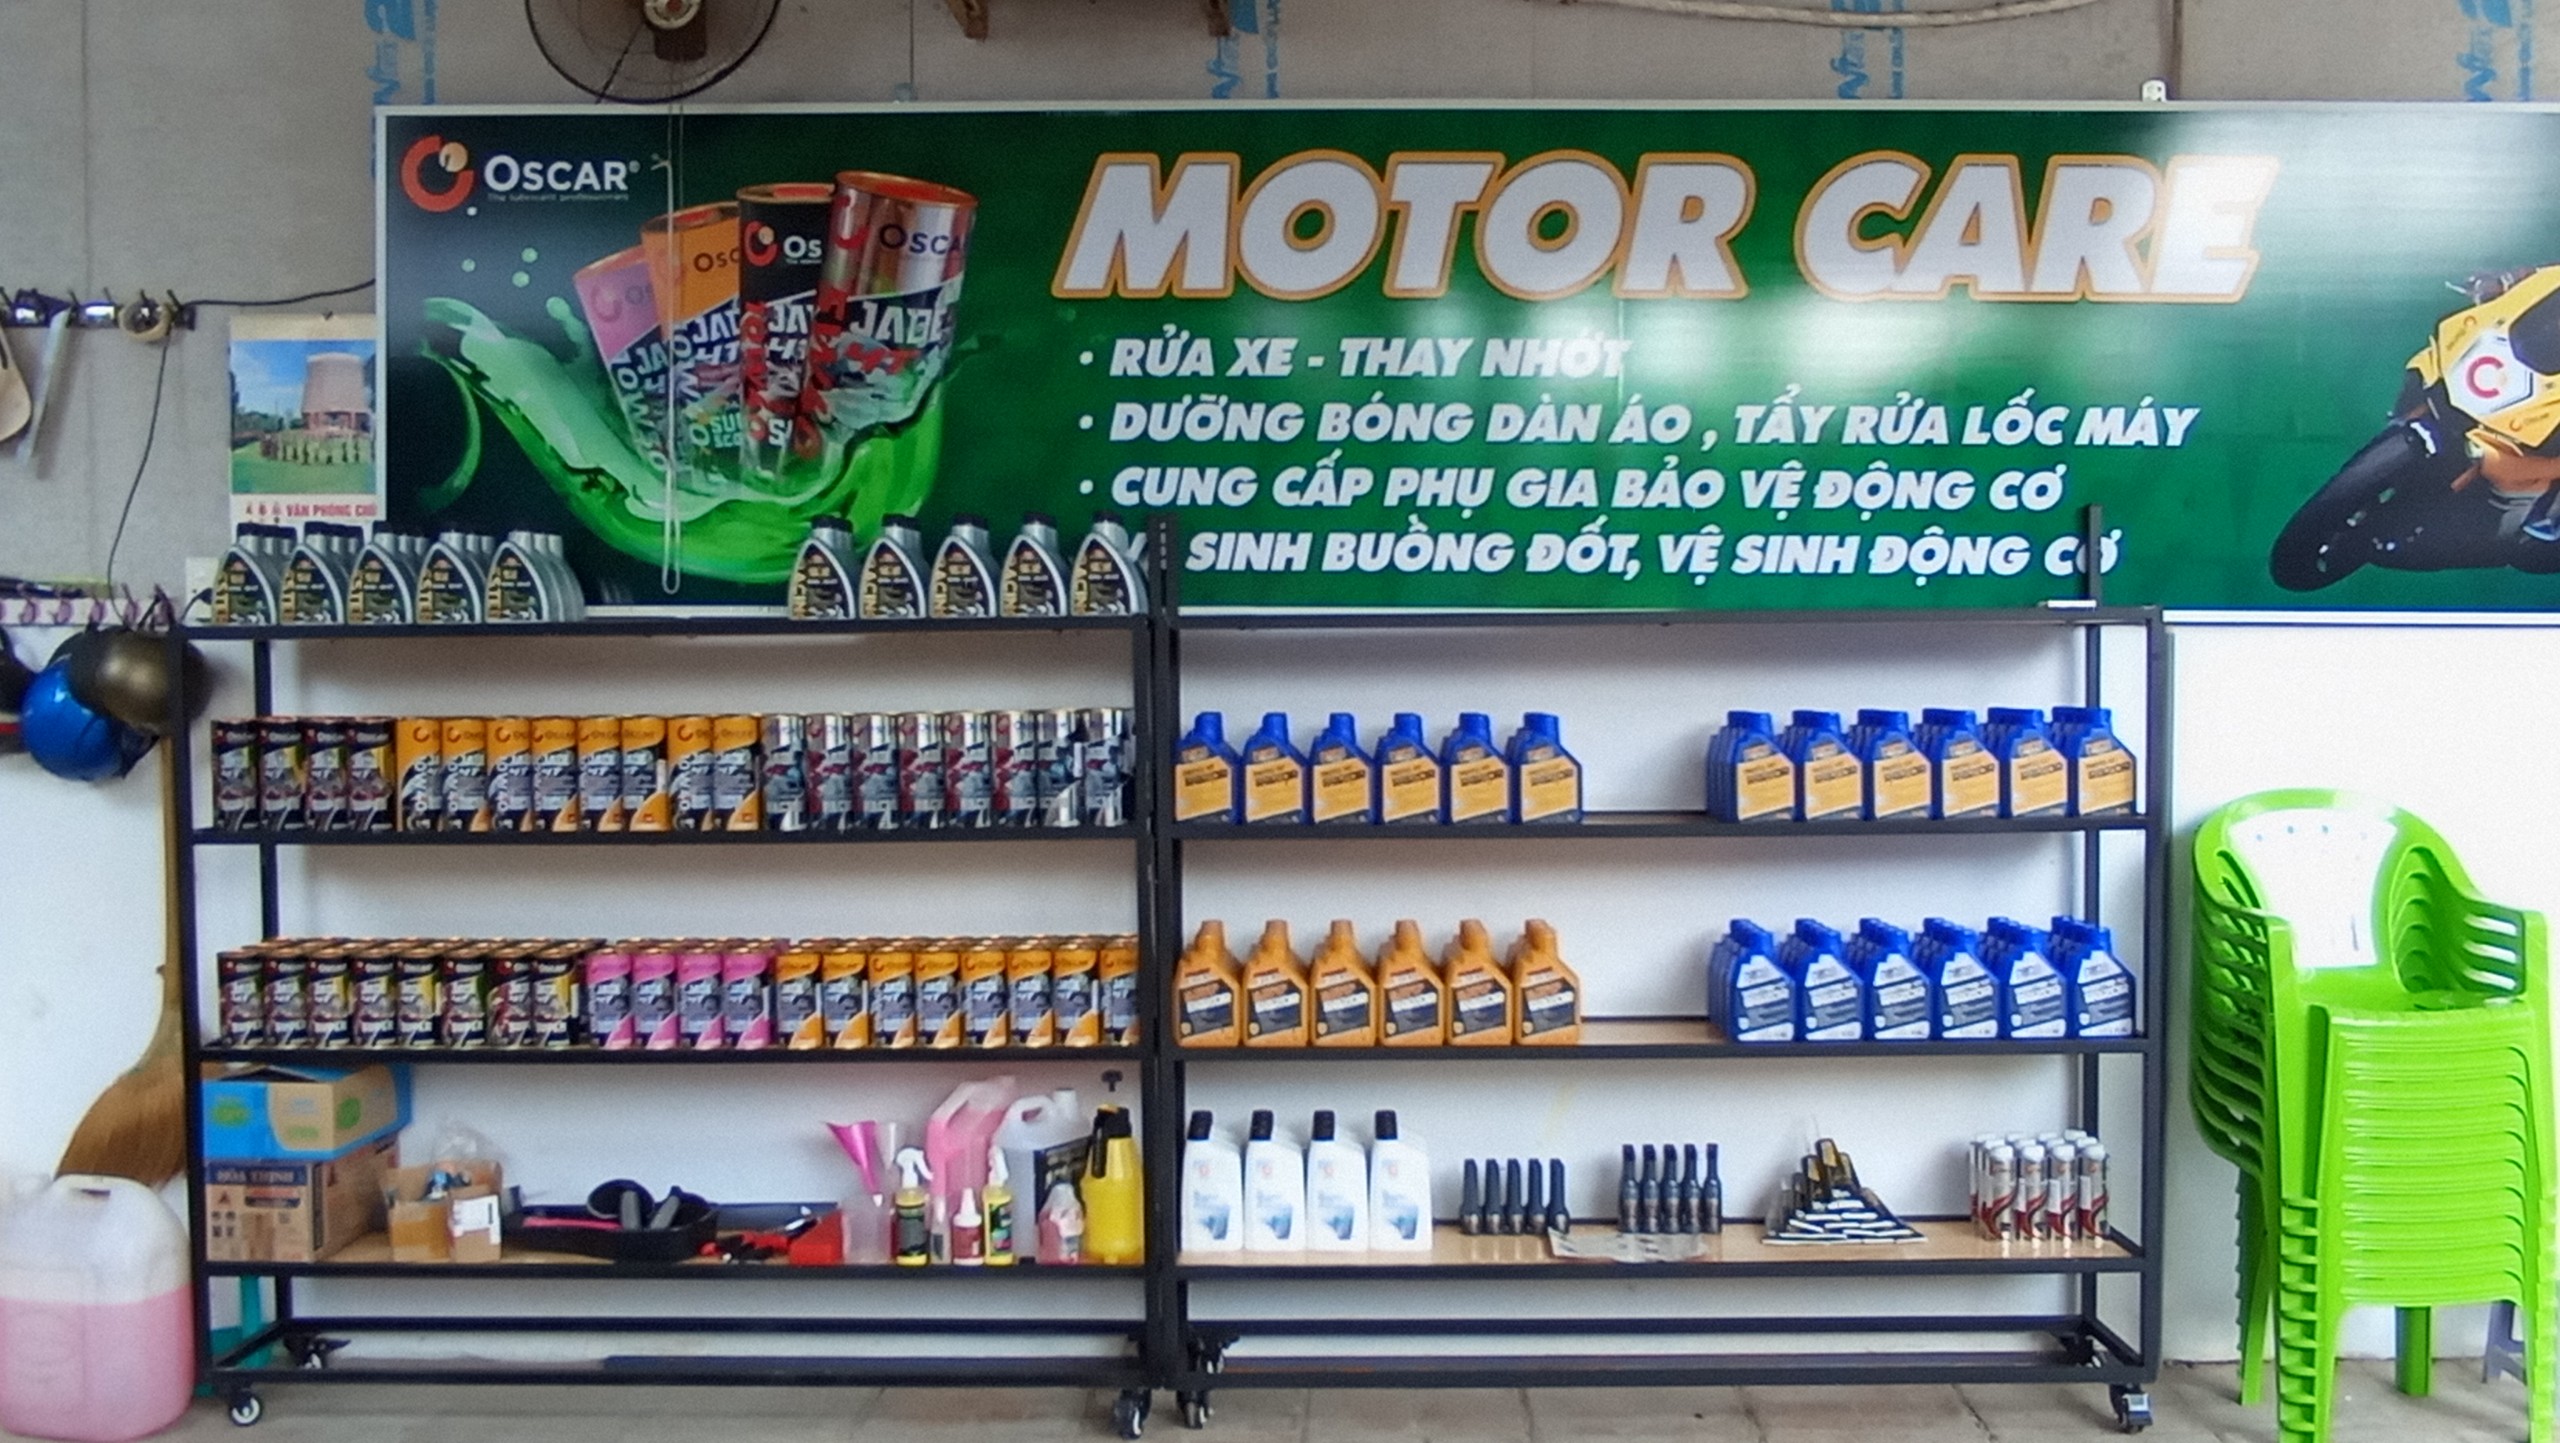 Rửa Xe Thay Nhớt Nhập Khẩu Chính Hãng - MOTOR CARE Quận 8